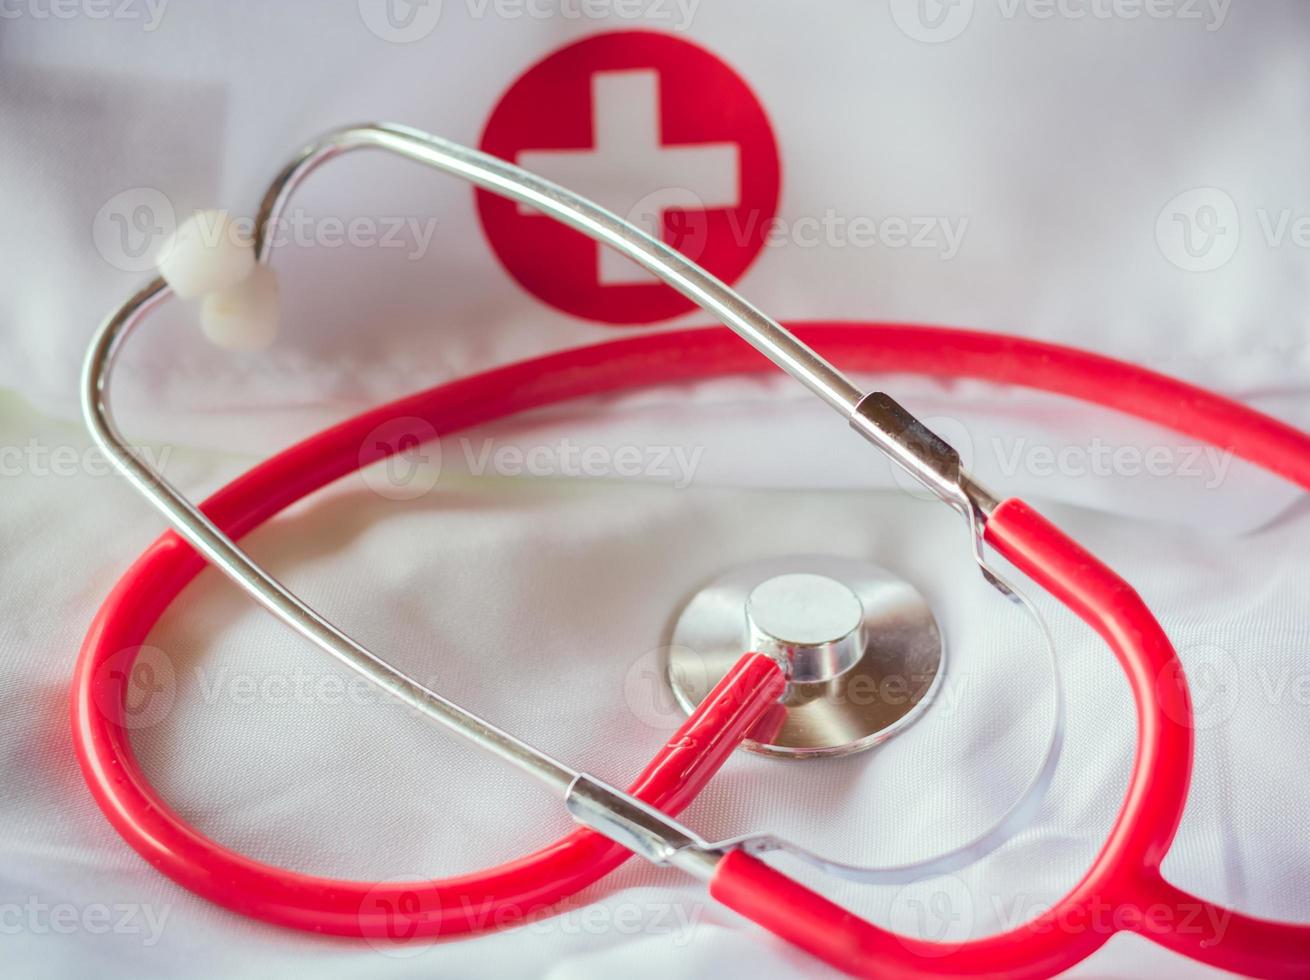 rode stethoscoop op een laboratoriumjas ii foto